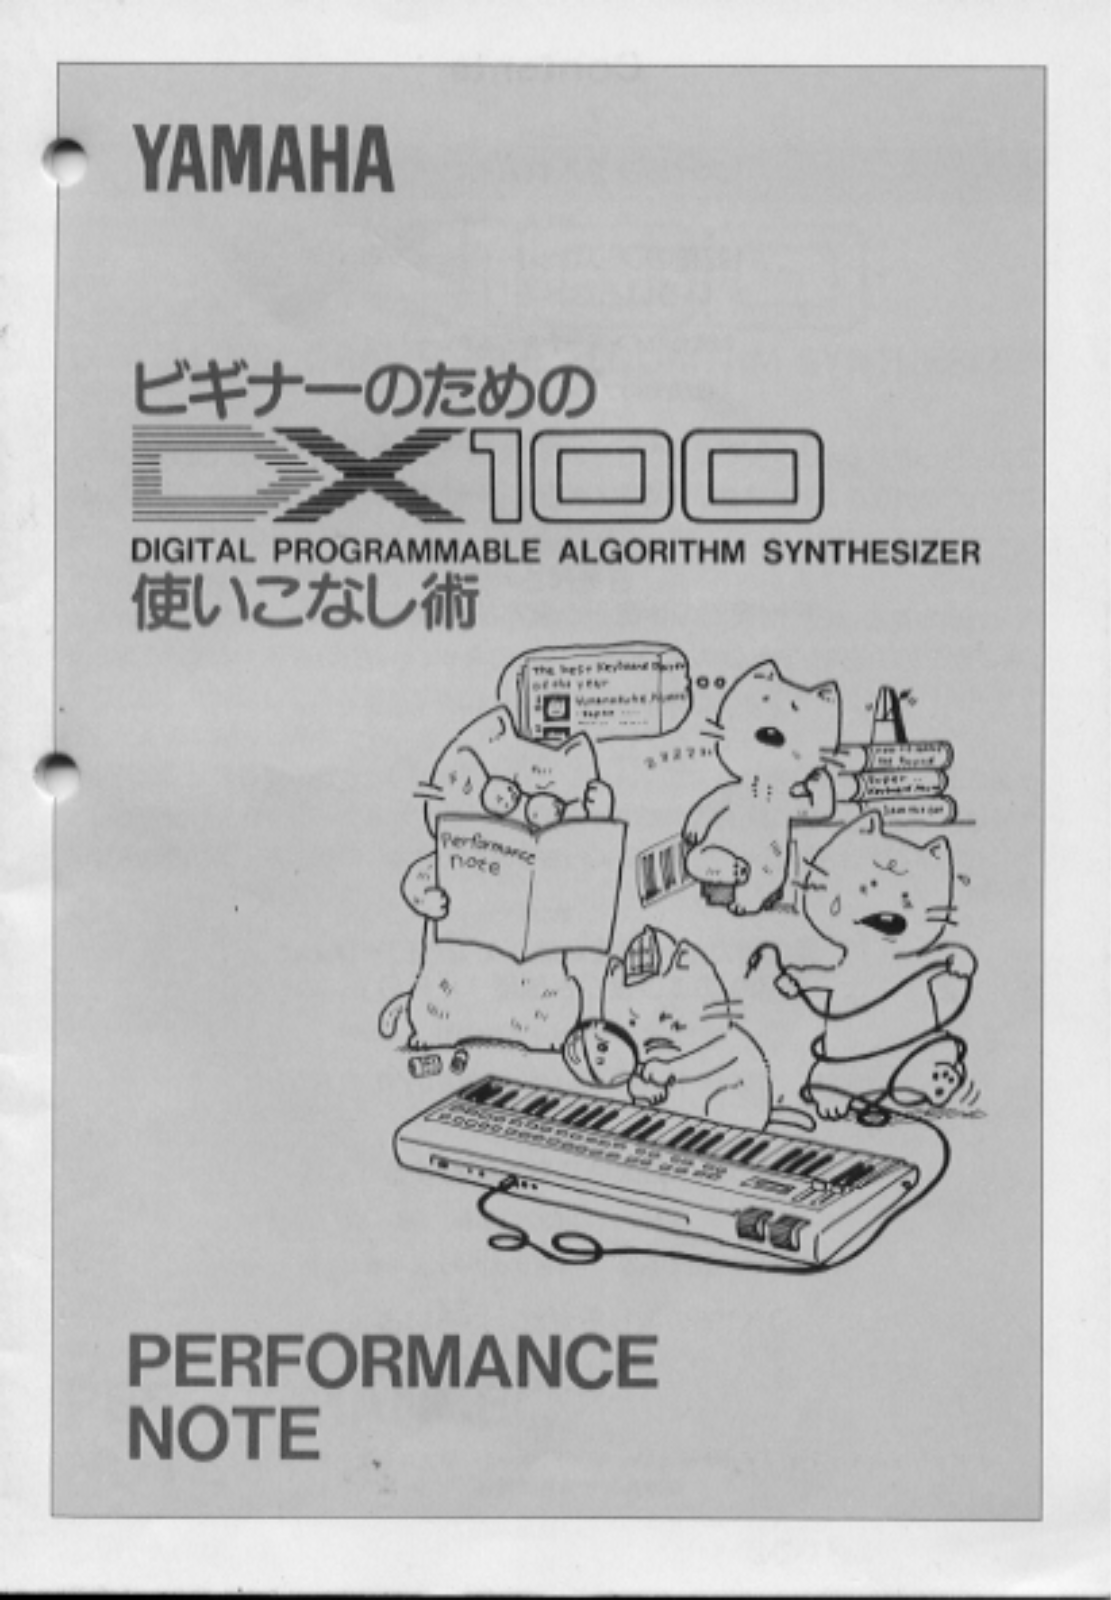 Yamaha DX100 User Manual